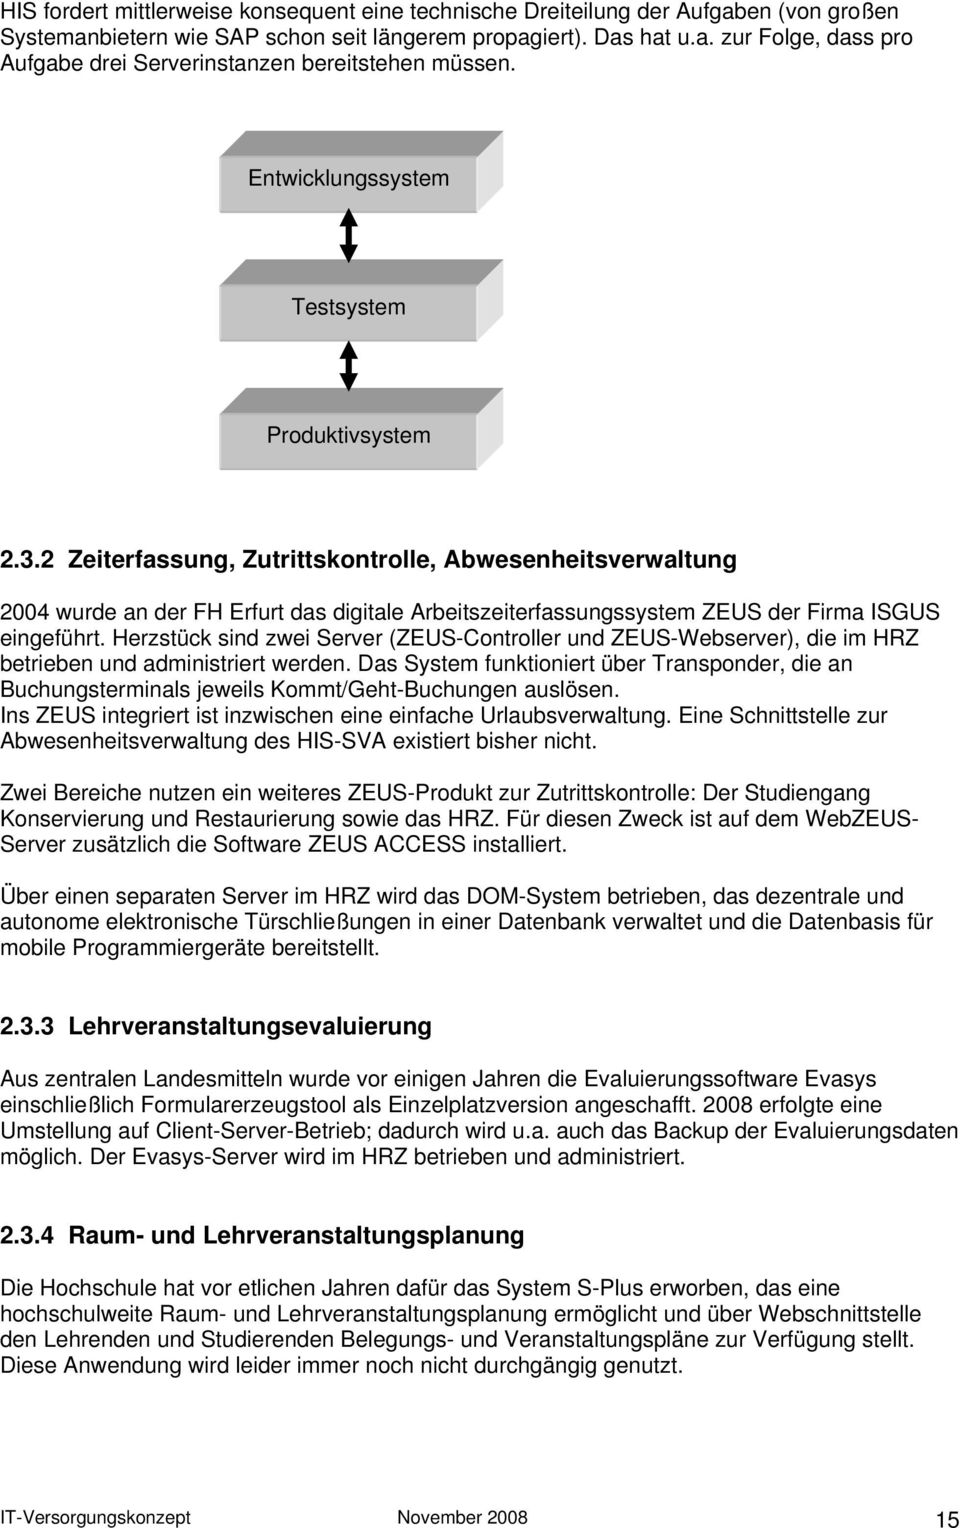 2 Zeiterfassung, Zutrittskontrolle, Abwesenheitsverwaltung 2004 wurde an der FH Erfurt das digitale Arbeitszeiterfassungssystem ZEUS der Firma ISGUS eingeführt.